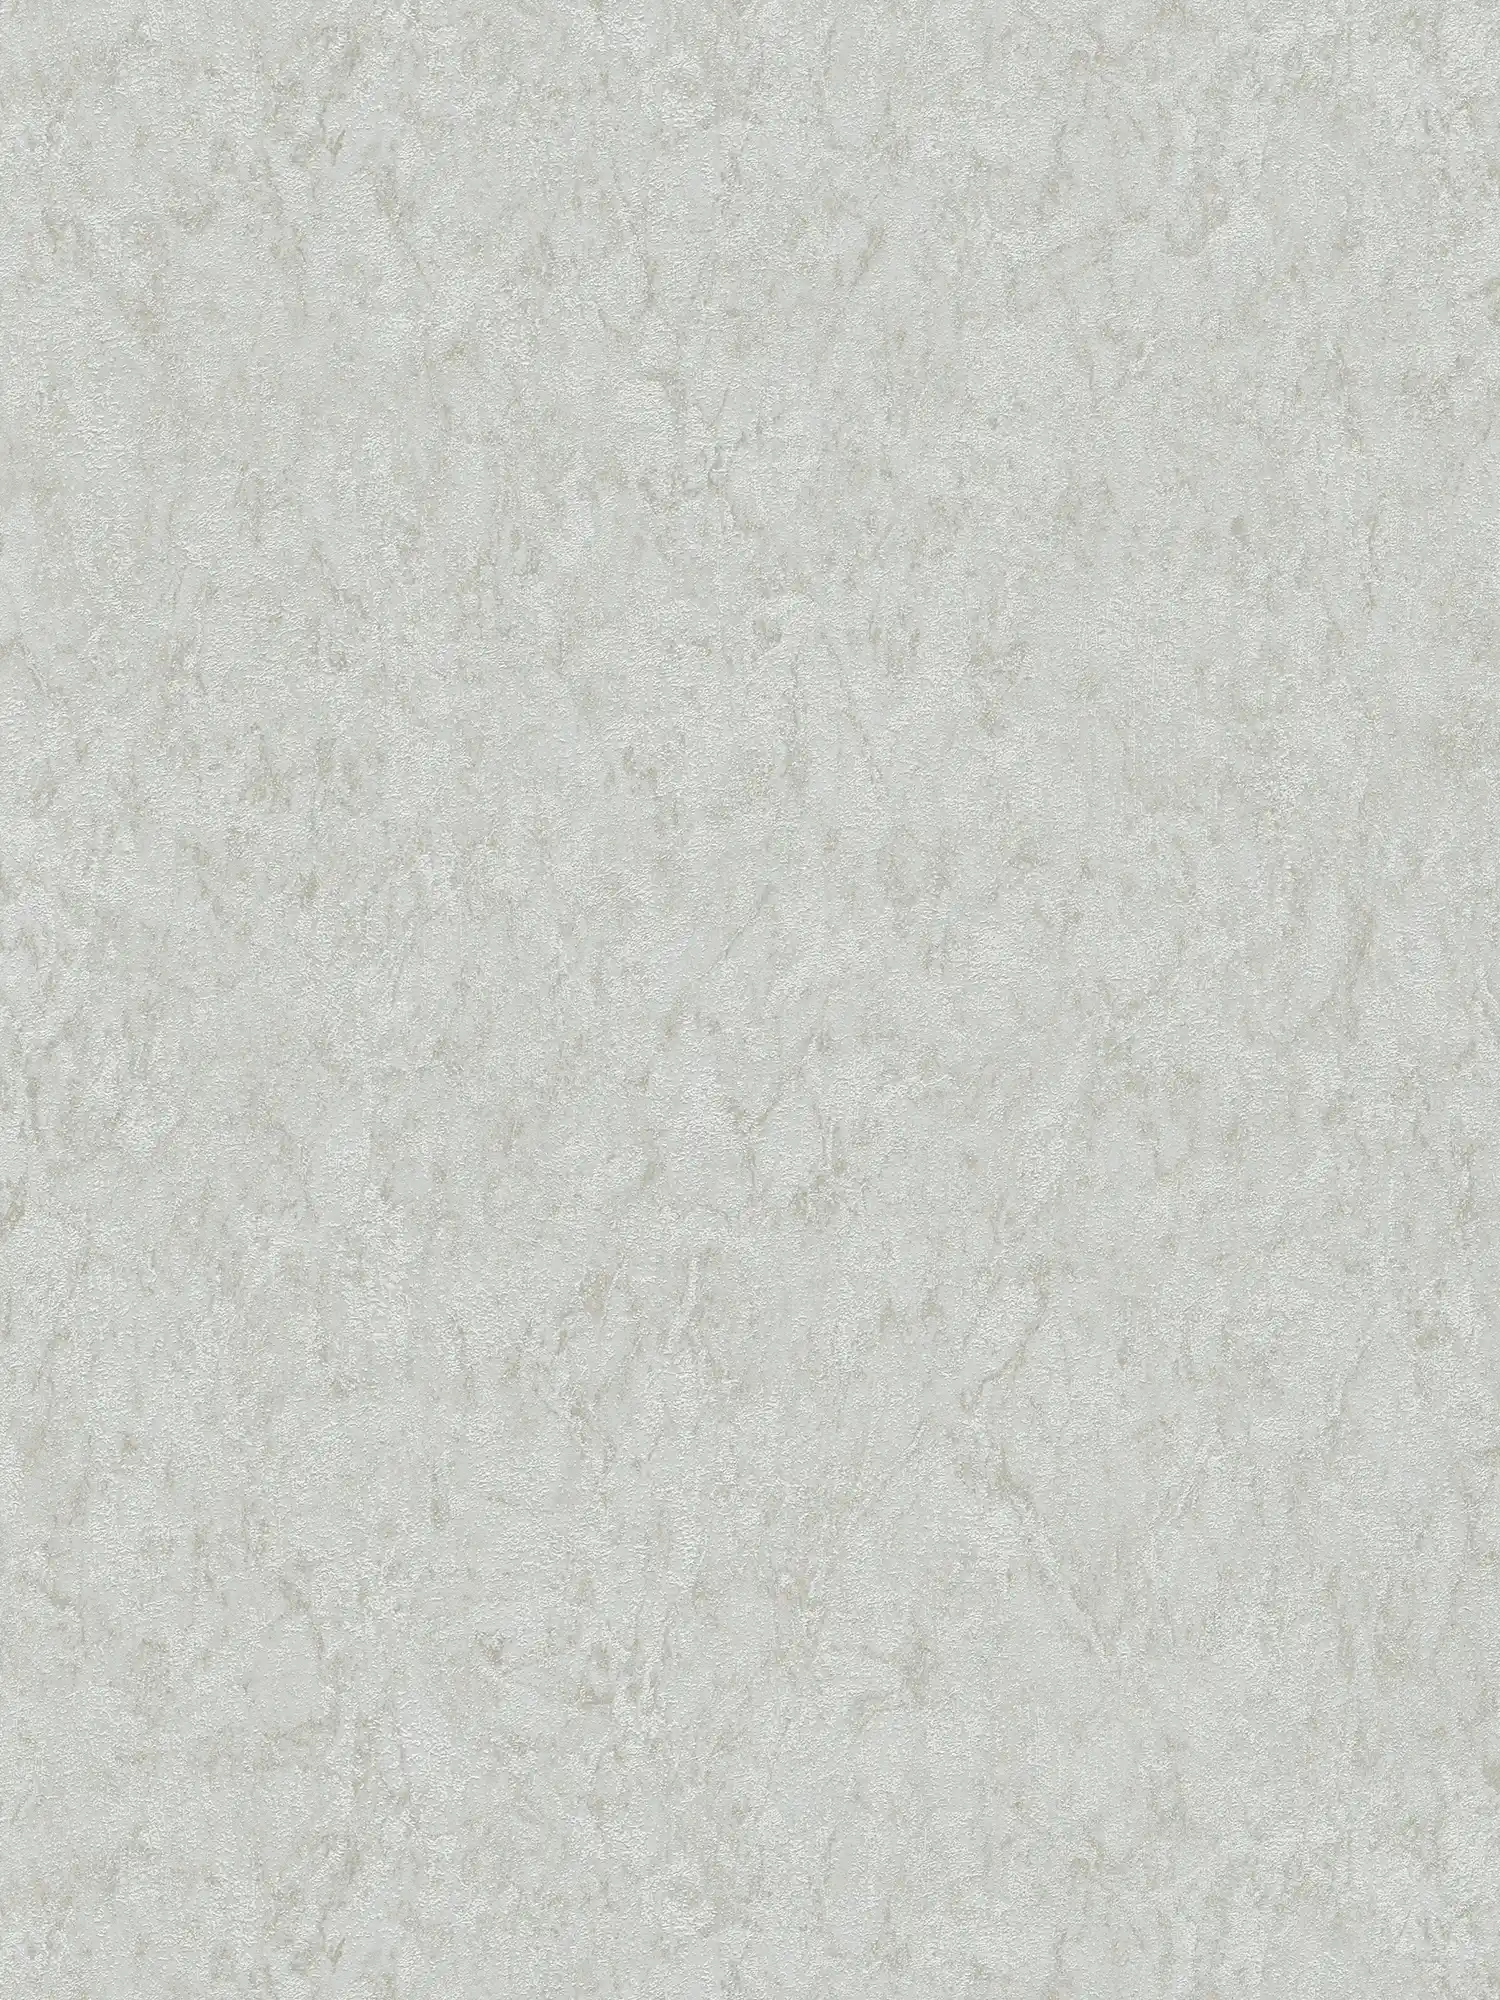 Papier peint uni avec effet texturé & dessin chiné - gris, beige
